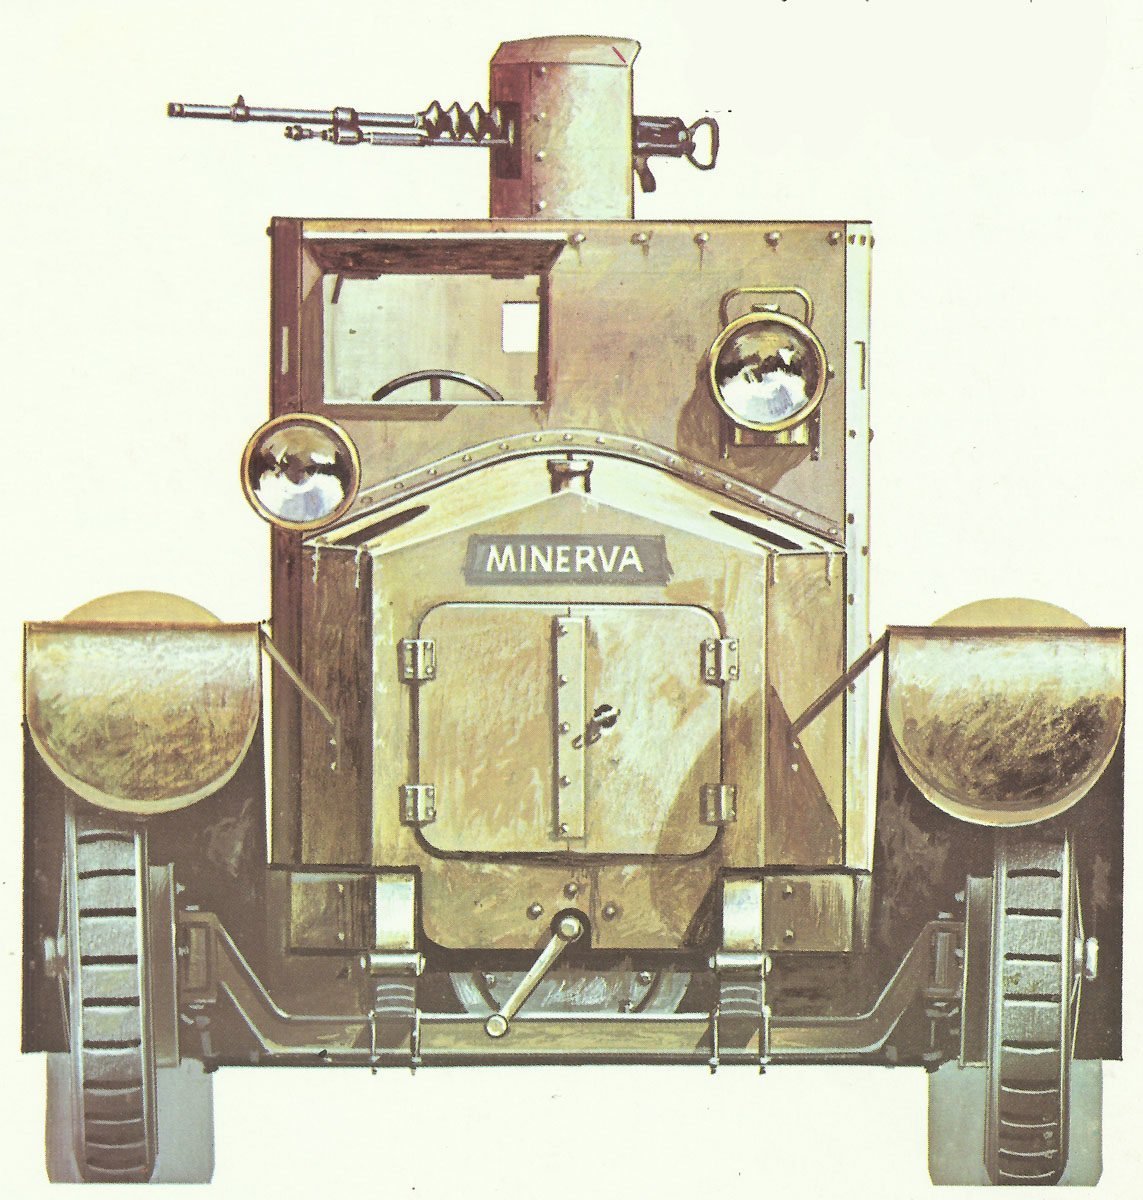 Minerva-Panzerwagen